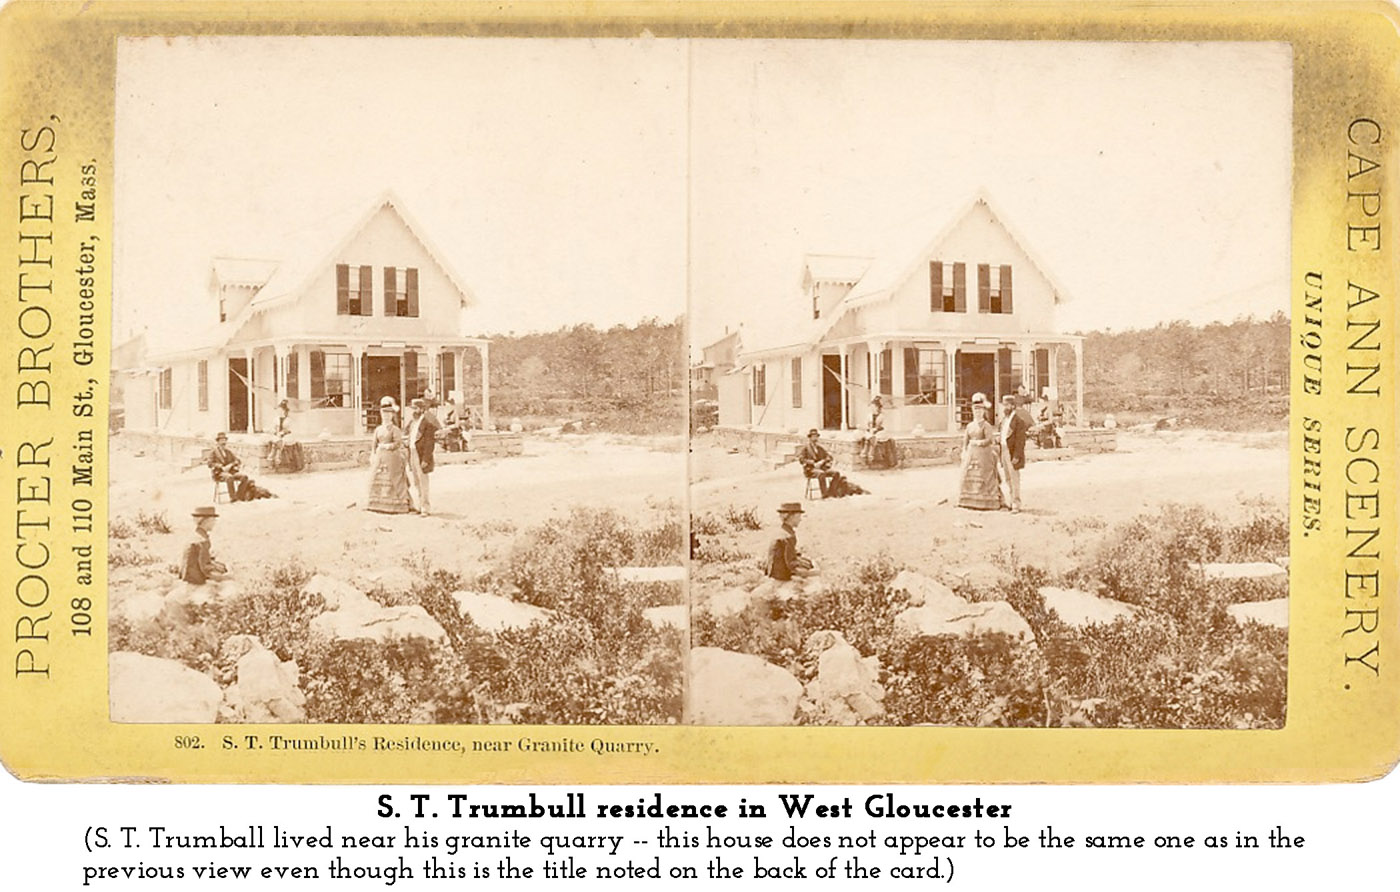 S. T. Trumbull residence